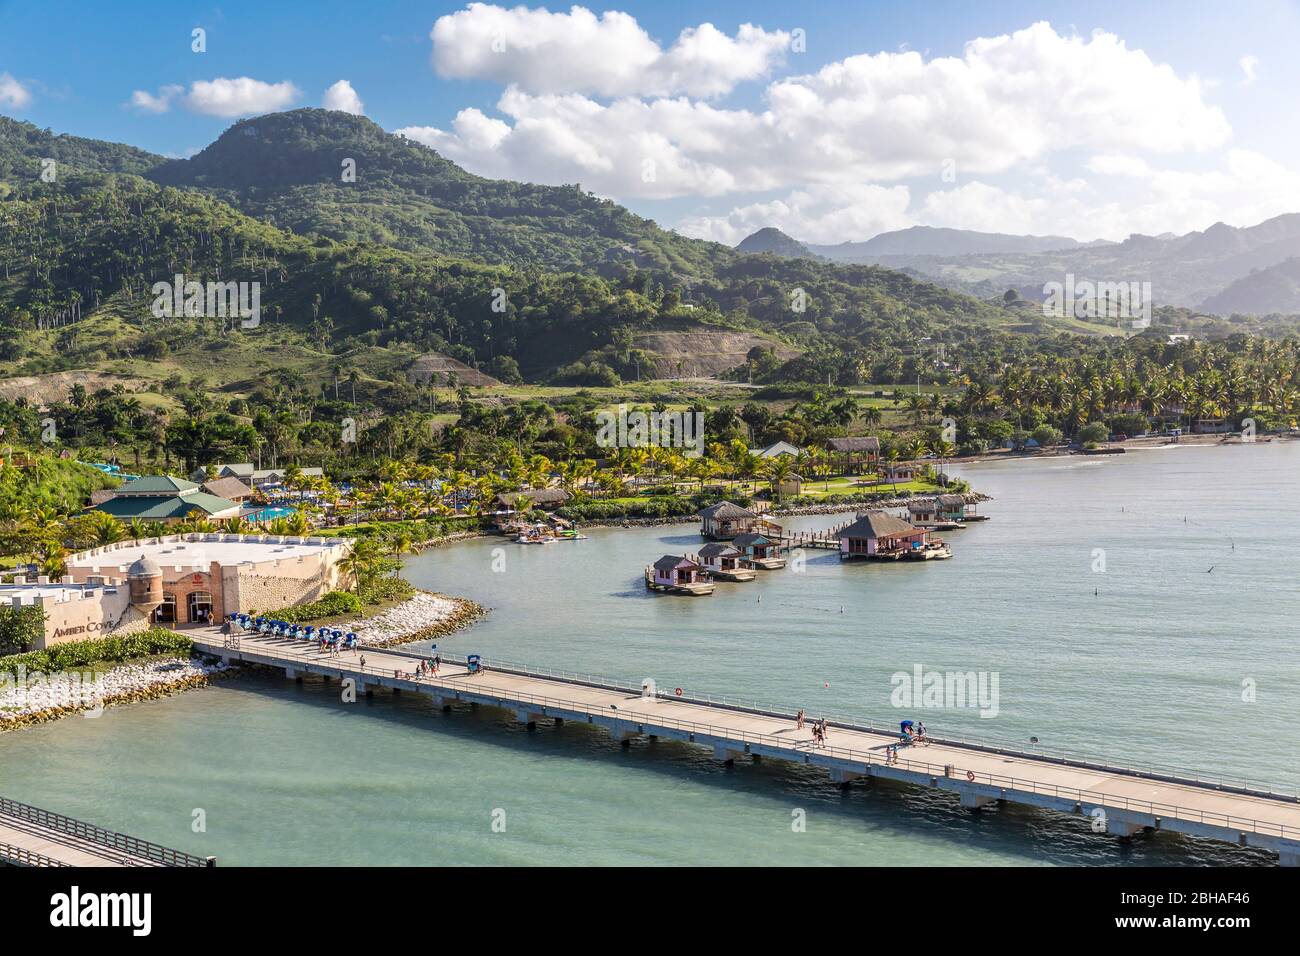 Aussicht vom Kreuzfahrtschiff auf die Landschaft, Touristenzentrum, Amber Cove Cruise Terminal, Hafen, Maimón, Dominikanische Republik, Große Antillen Stock Photo